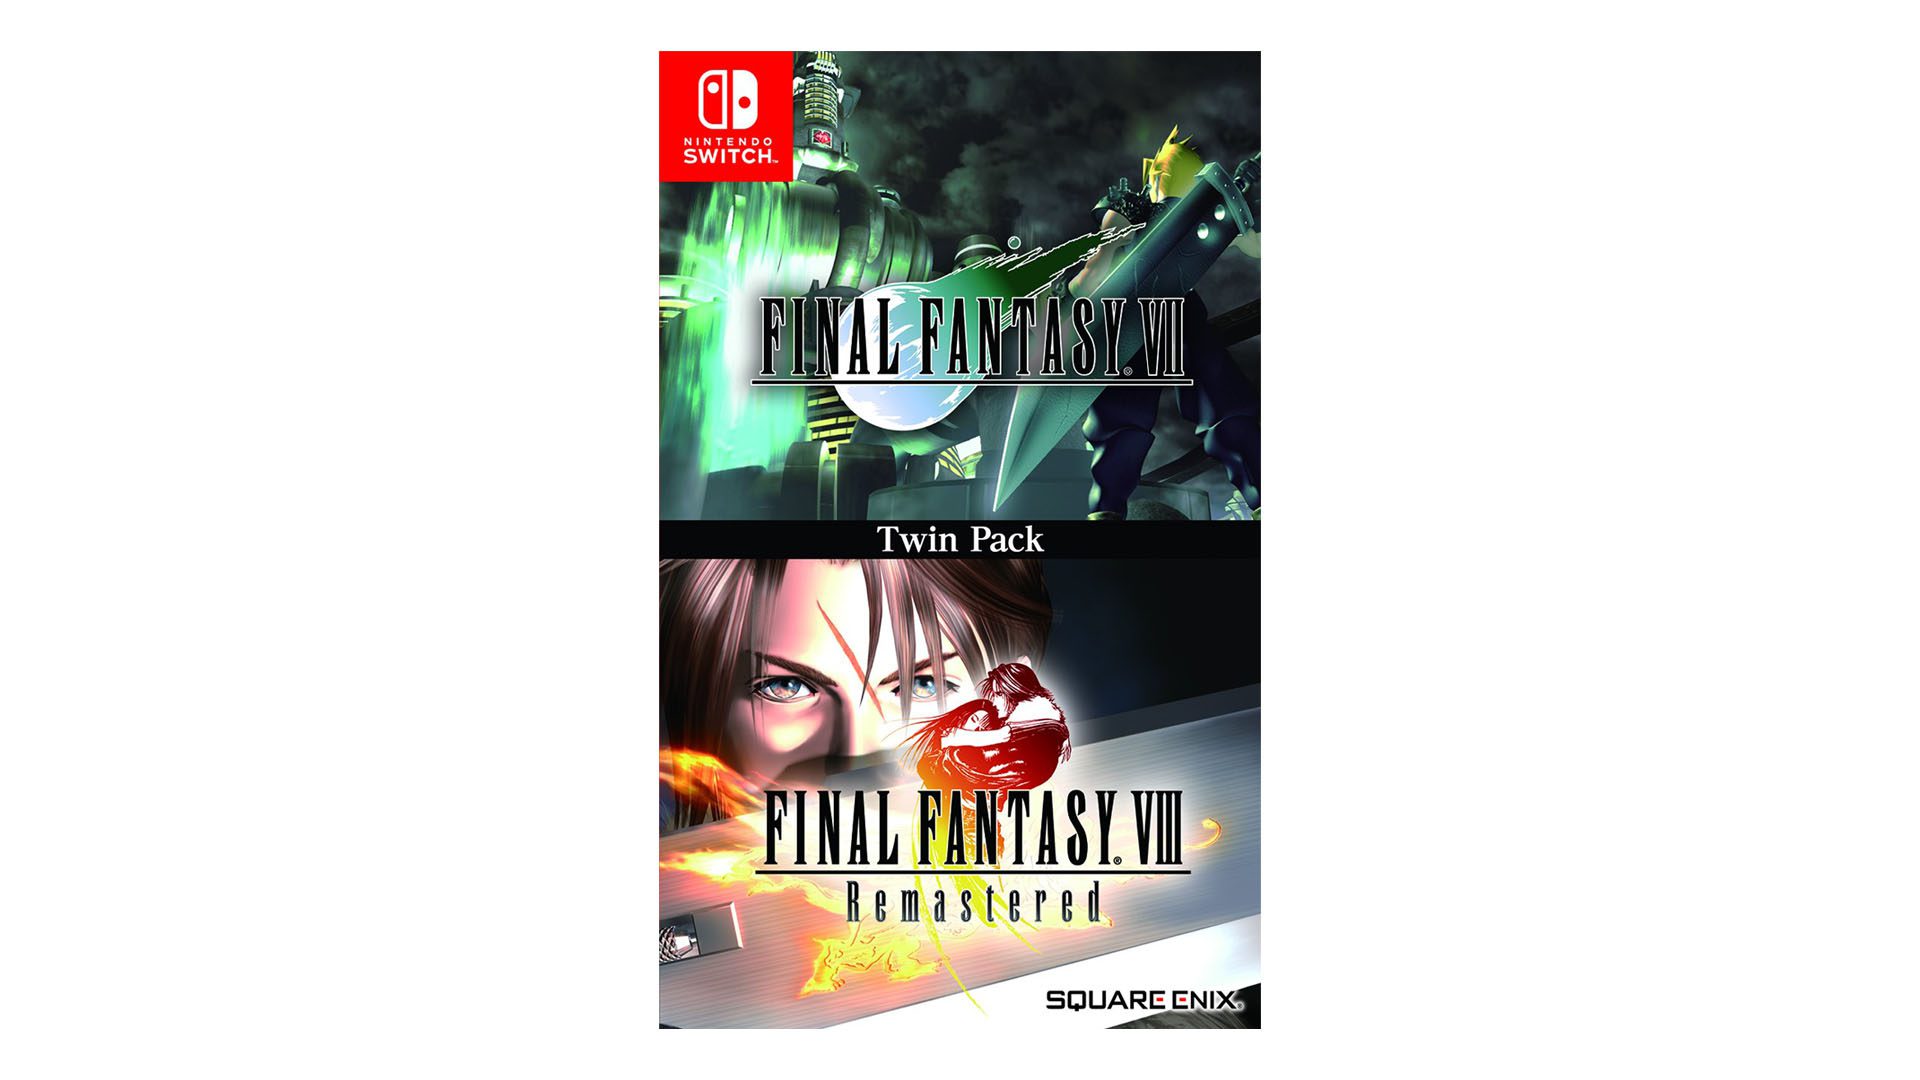 Final Fantasy VII und Final Fantasy VIII Remastered Physical Release angekündigt für Switch